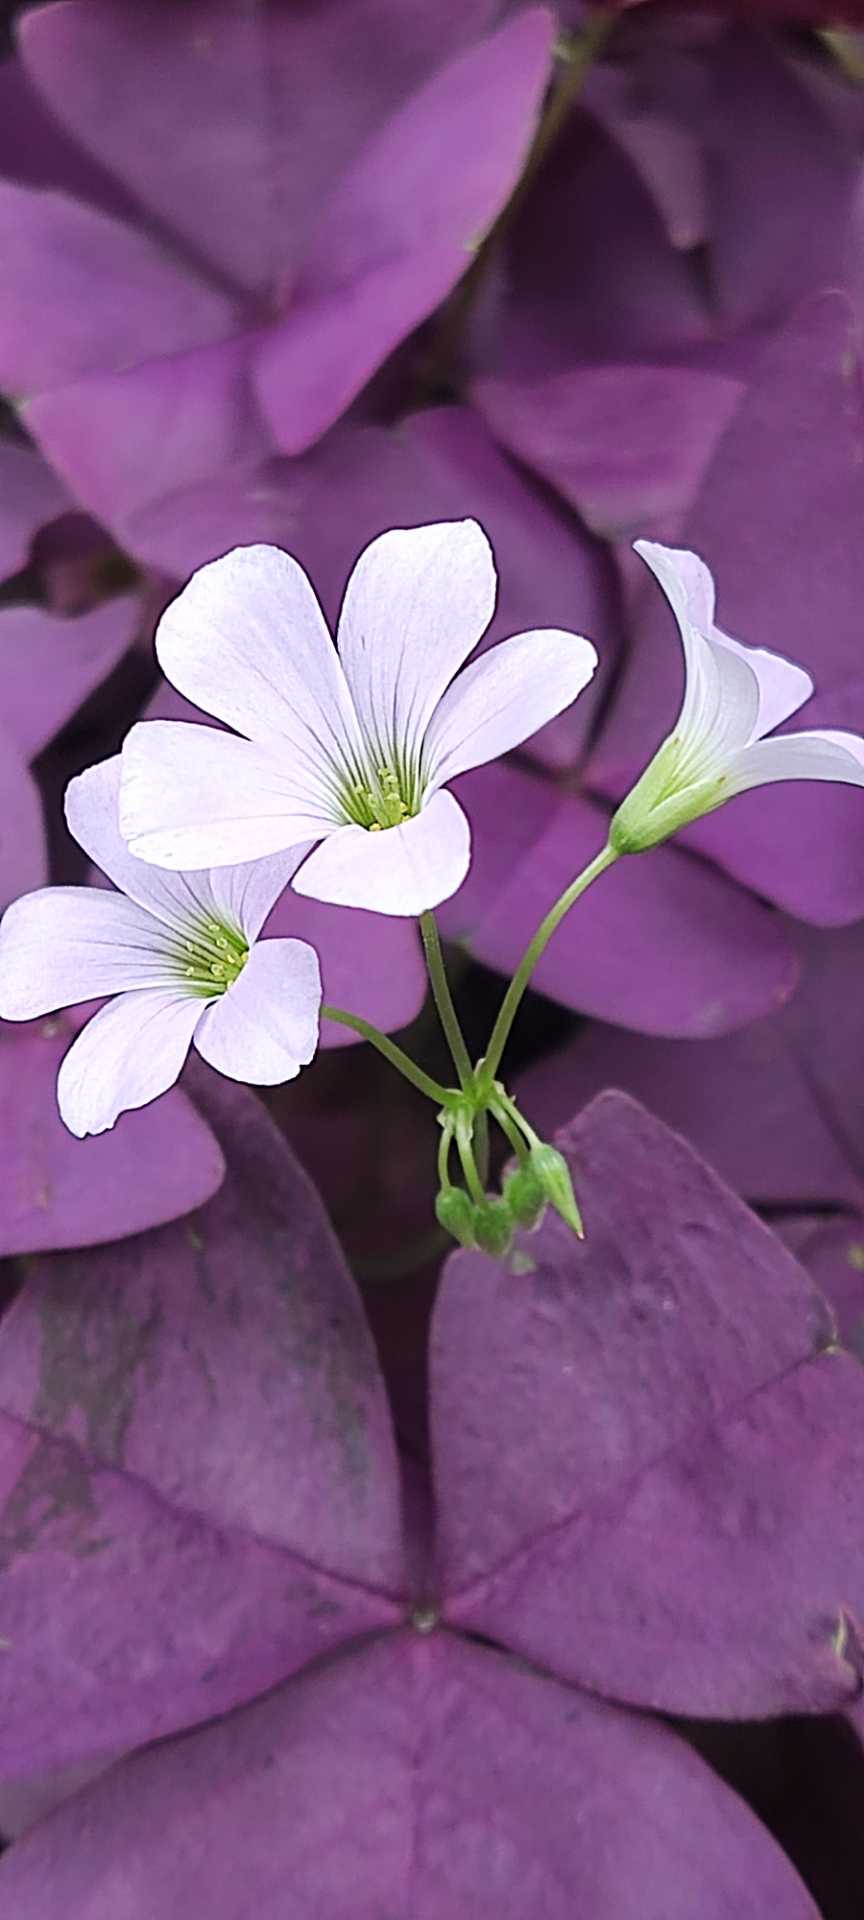 紫色酢浆草是爱尔兰的国花,被人们称作为守护圣人圣帕特里克的花朵